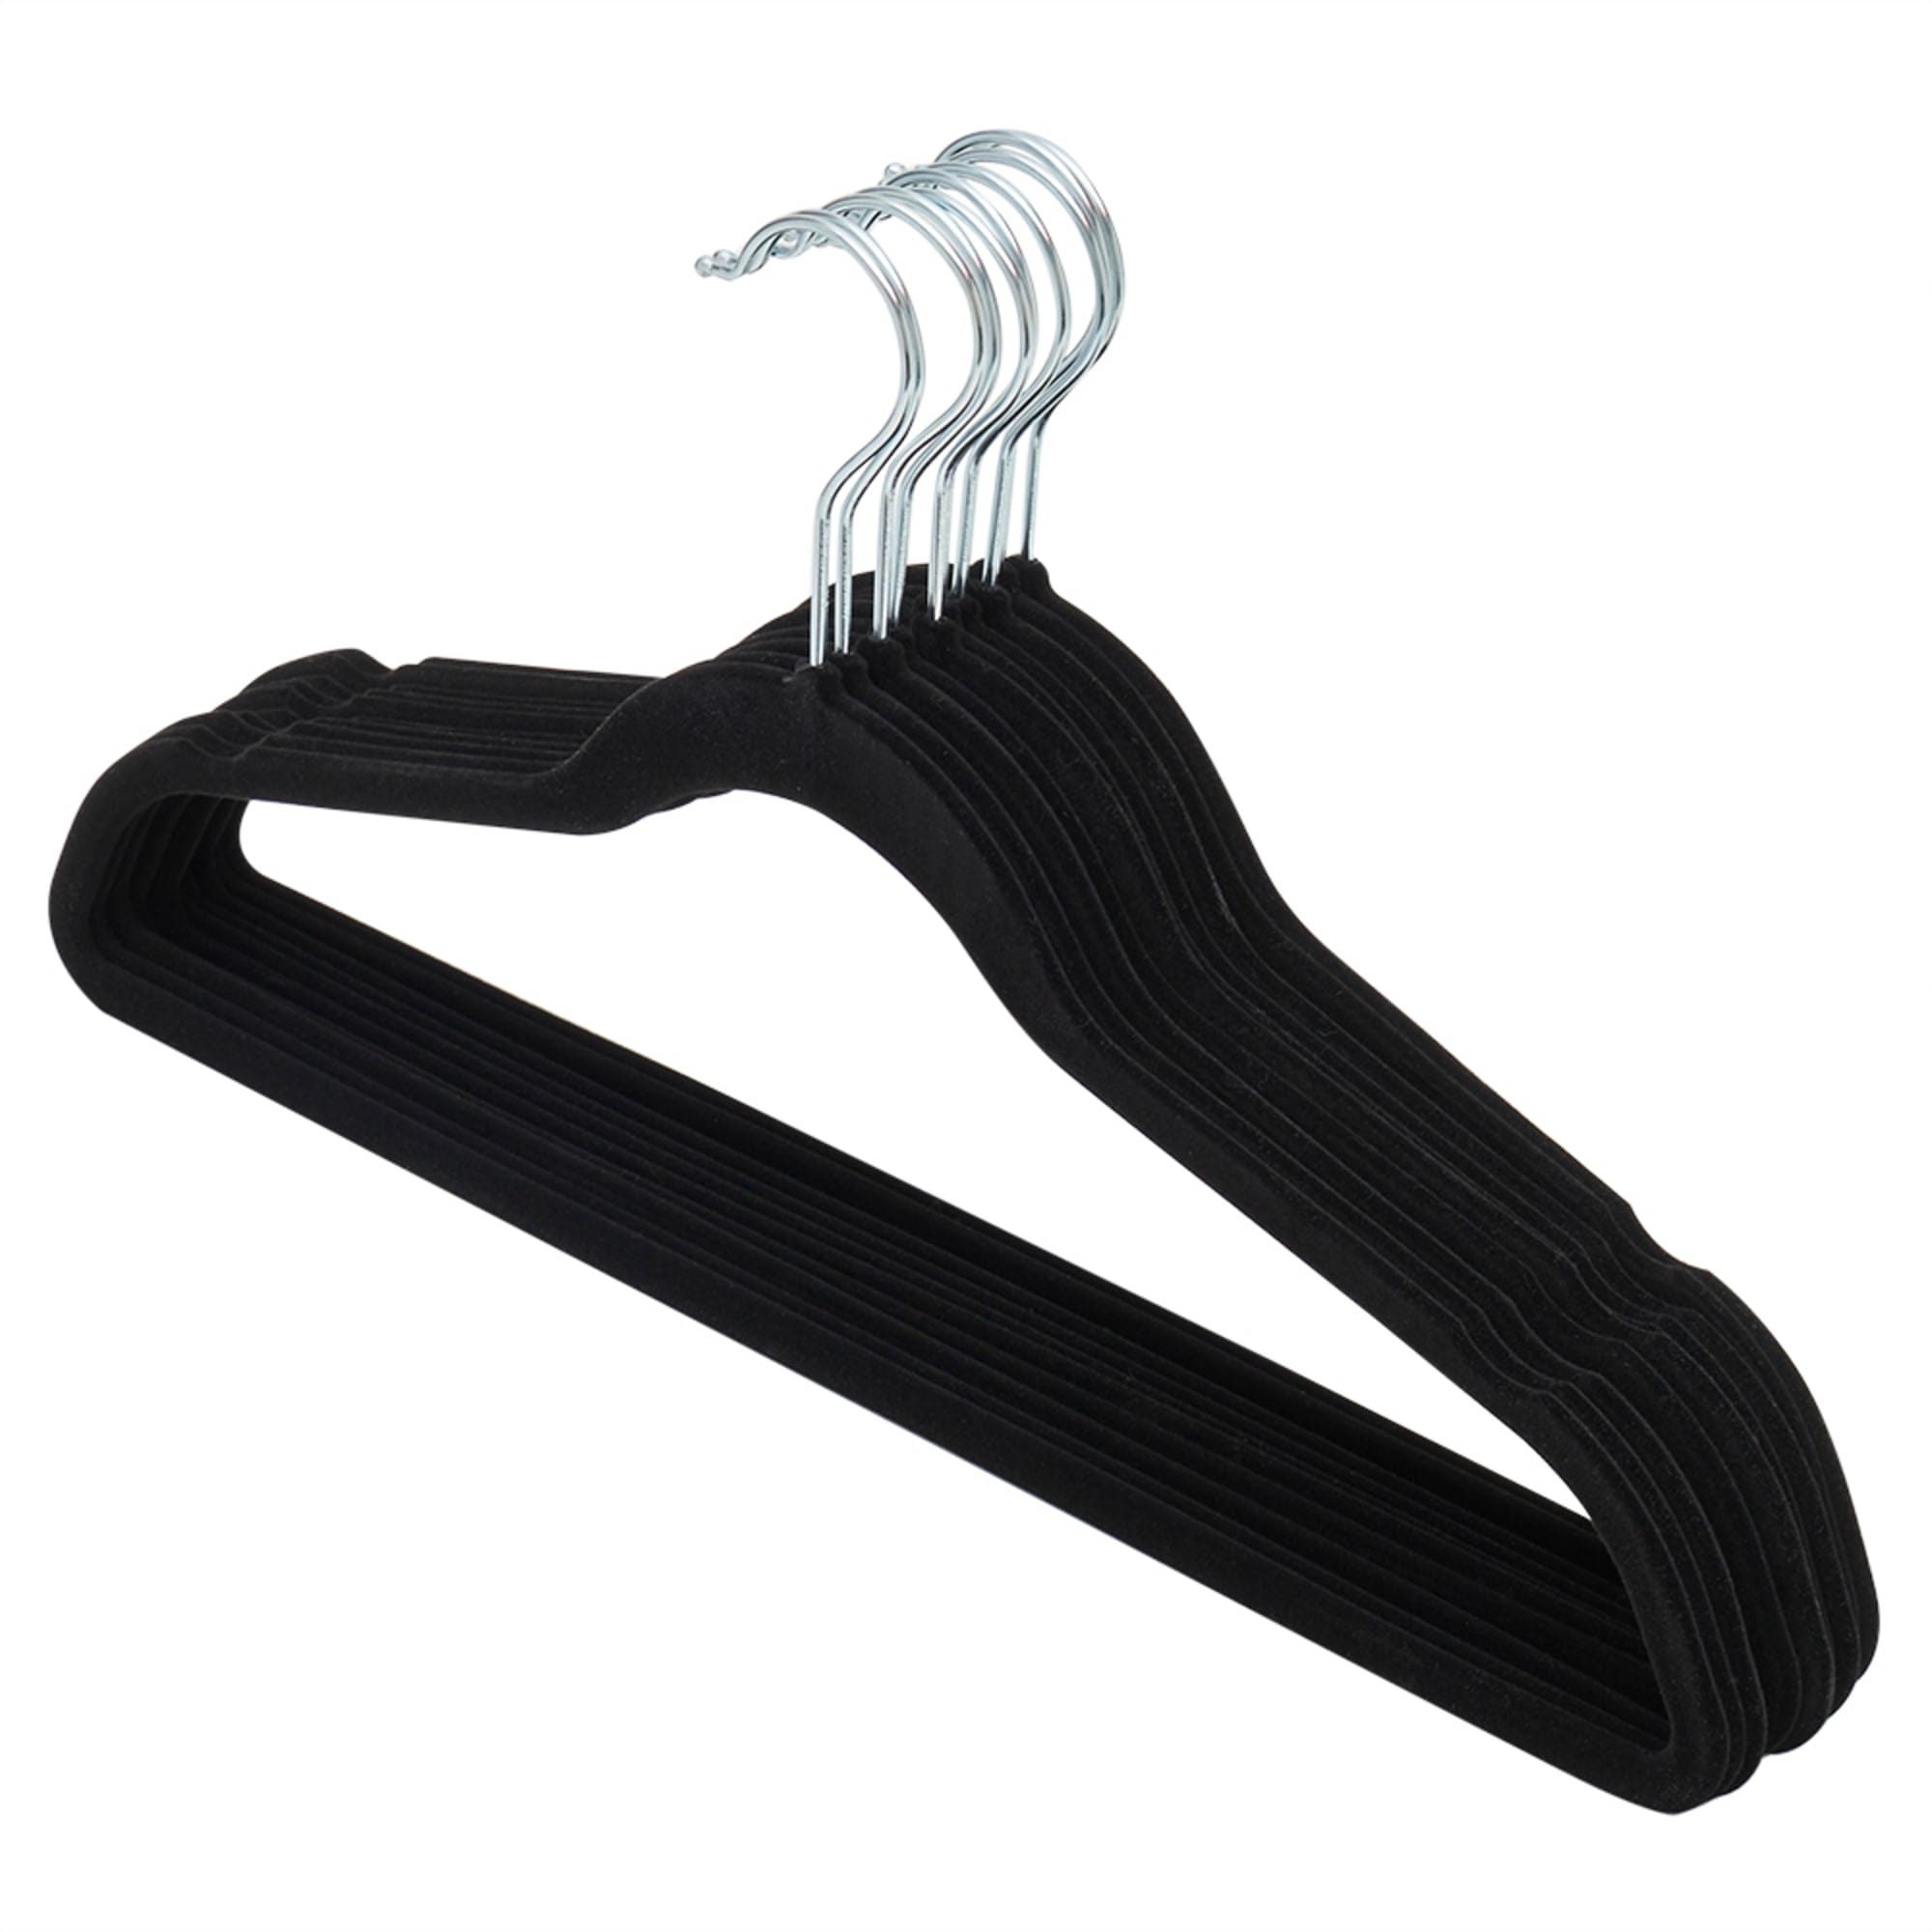 Home Basics Velvet Hangers With Clips, (Pack of 5), Black